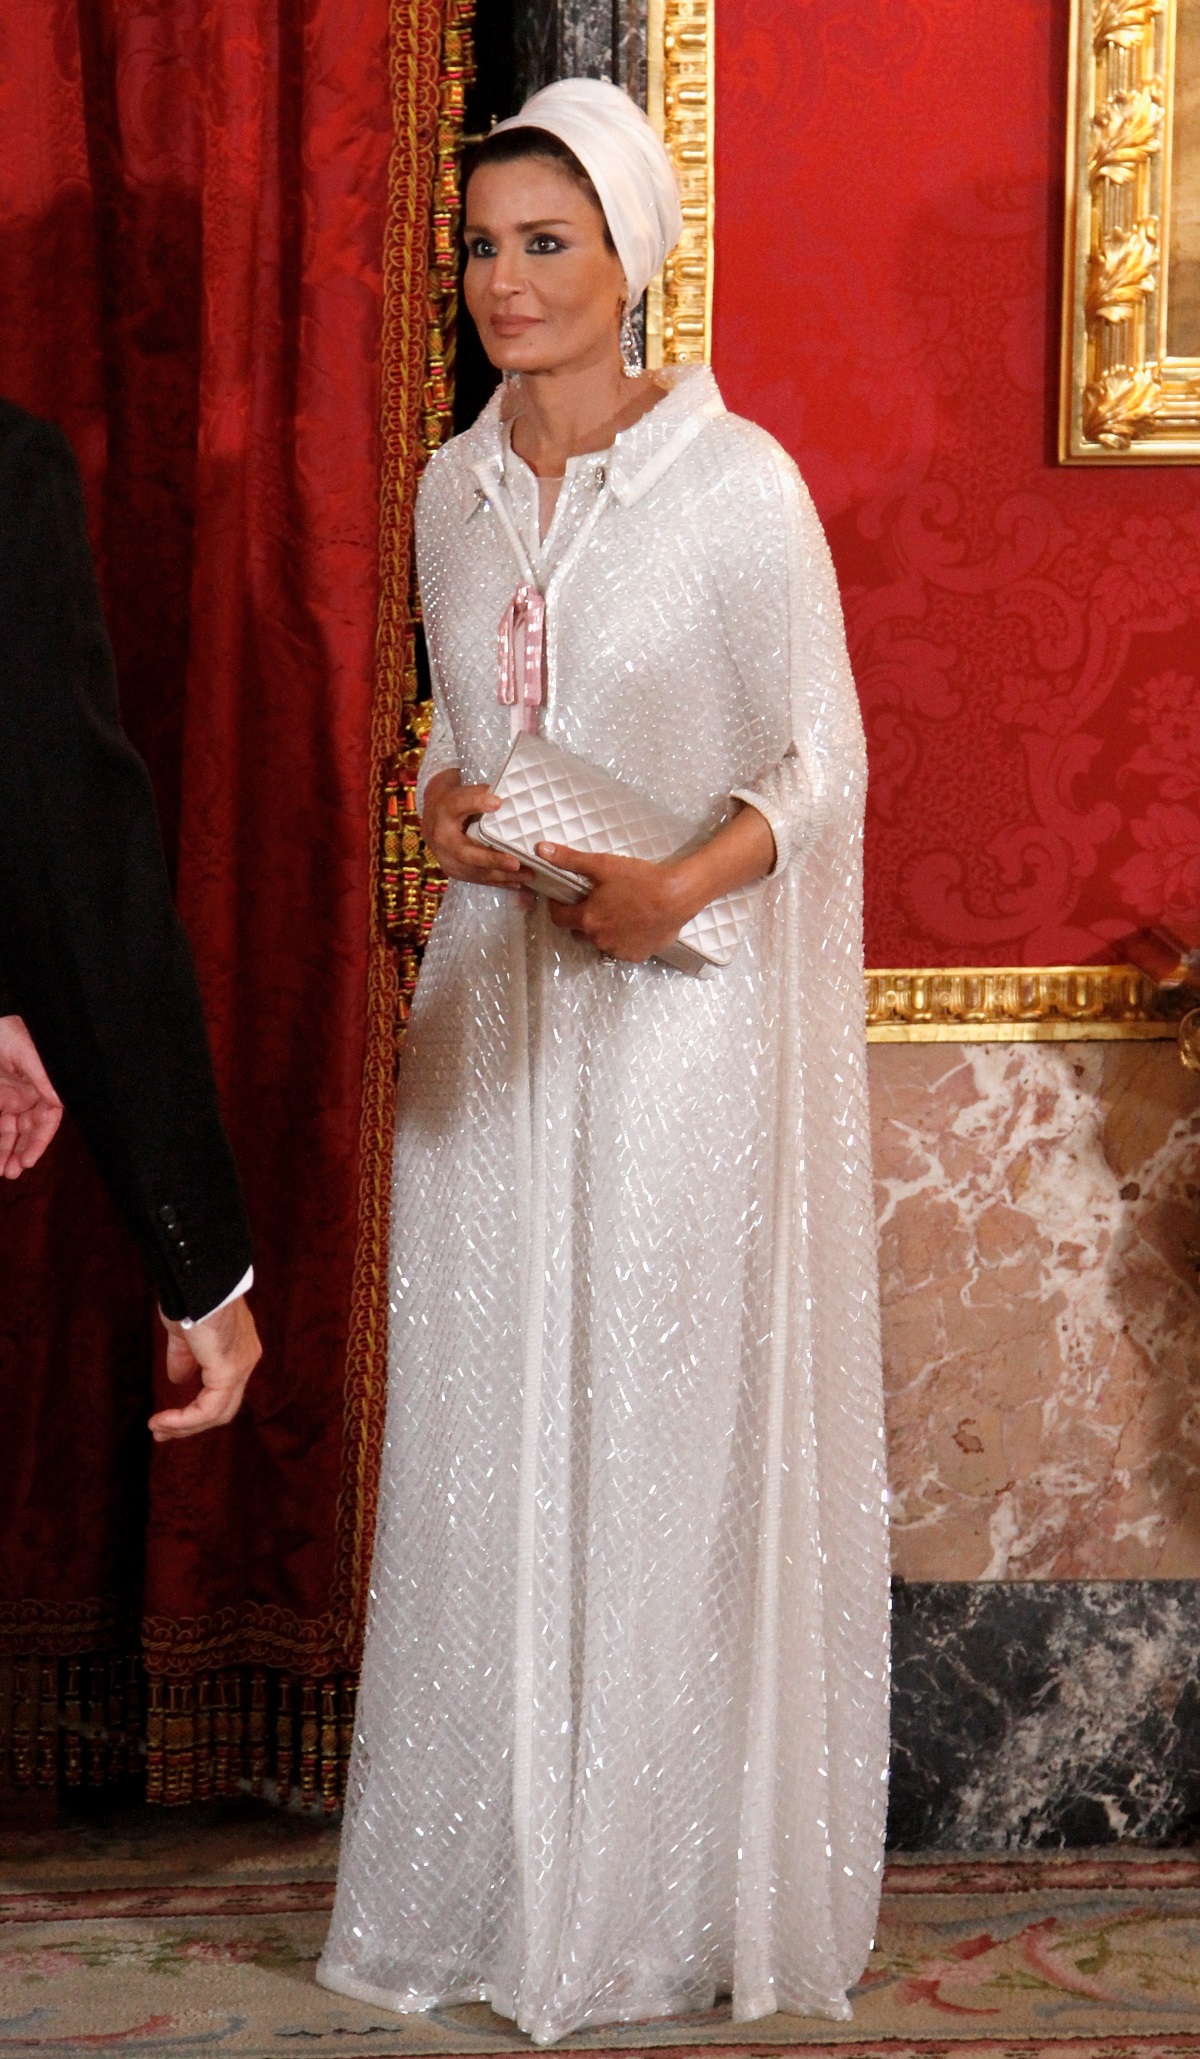 Тя се различава по много неща от останалите жени в страната ѝ - Катар. Облича панталони и рокли, подчертаващи формите ѝ, носи само тюрбан, има американско образование, а нейната дума се чува както в дома ѝ, така и във власта. Името ѝ е Моза бин Насер ал Миснед, втората съпруга на бившия емир на Катар шейх Хамад бин Калифа ал Тани (1995-2013 г.). На 18 г. шейха Моза загърбва плановете за брак с бъдещия емир, за да завърши образованието си по психология, а след това заминава да учи в Щатите. Връщайки се оттам, Моза е готова да се отдаде на семейството.